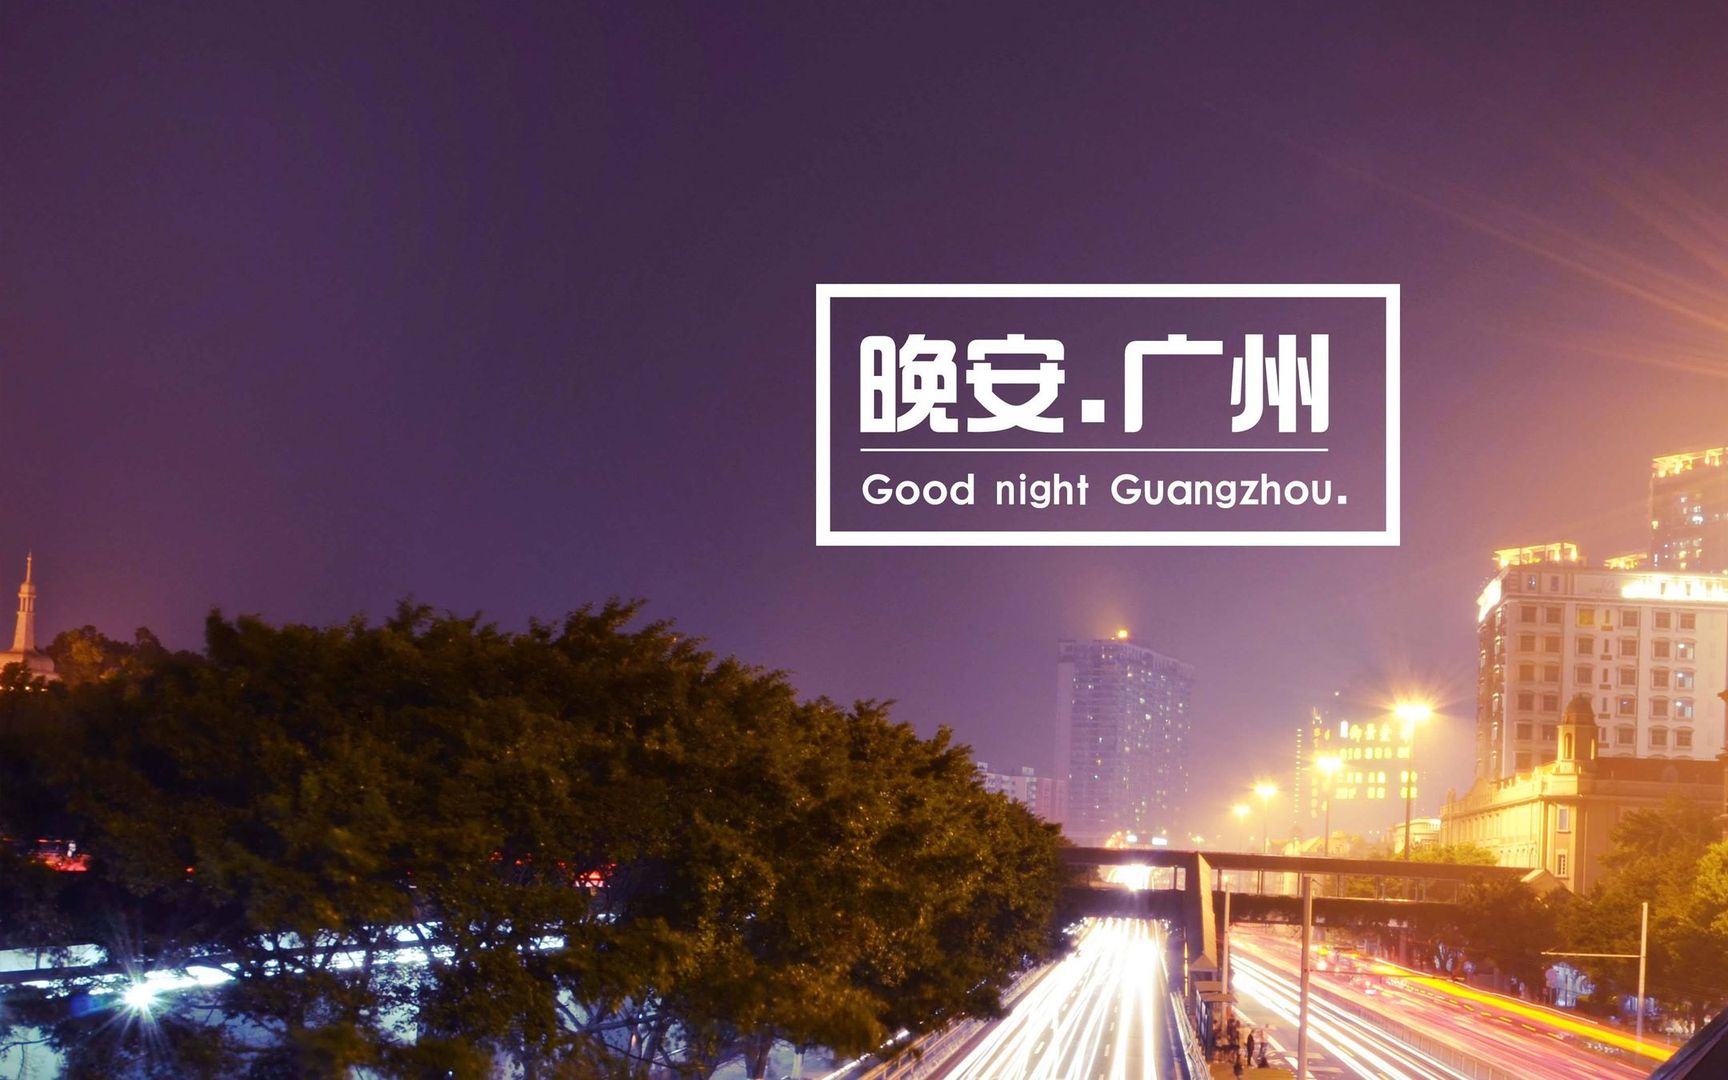 夜色笼罩下的广州街道五光十色 晚安广州